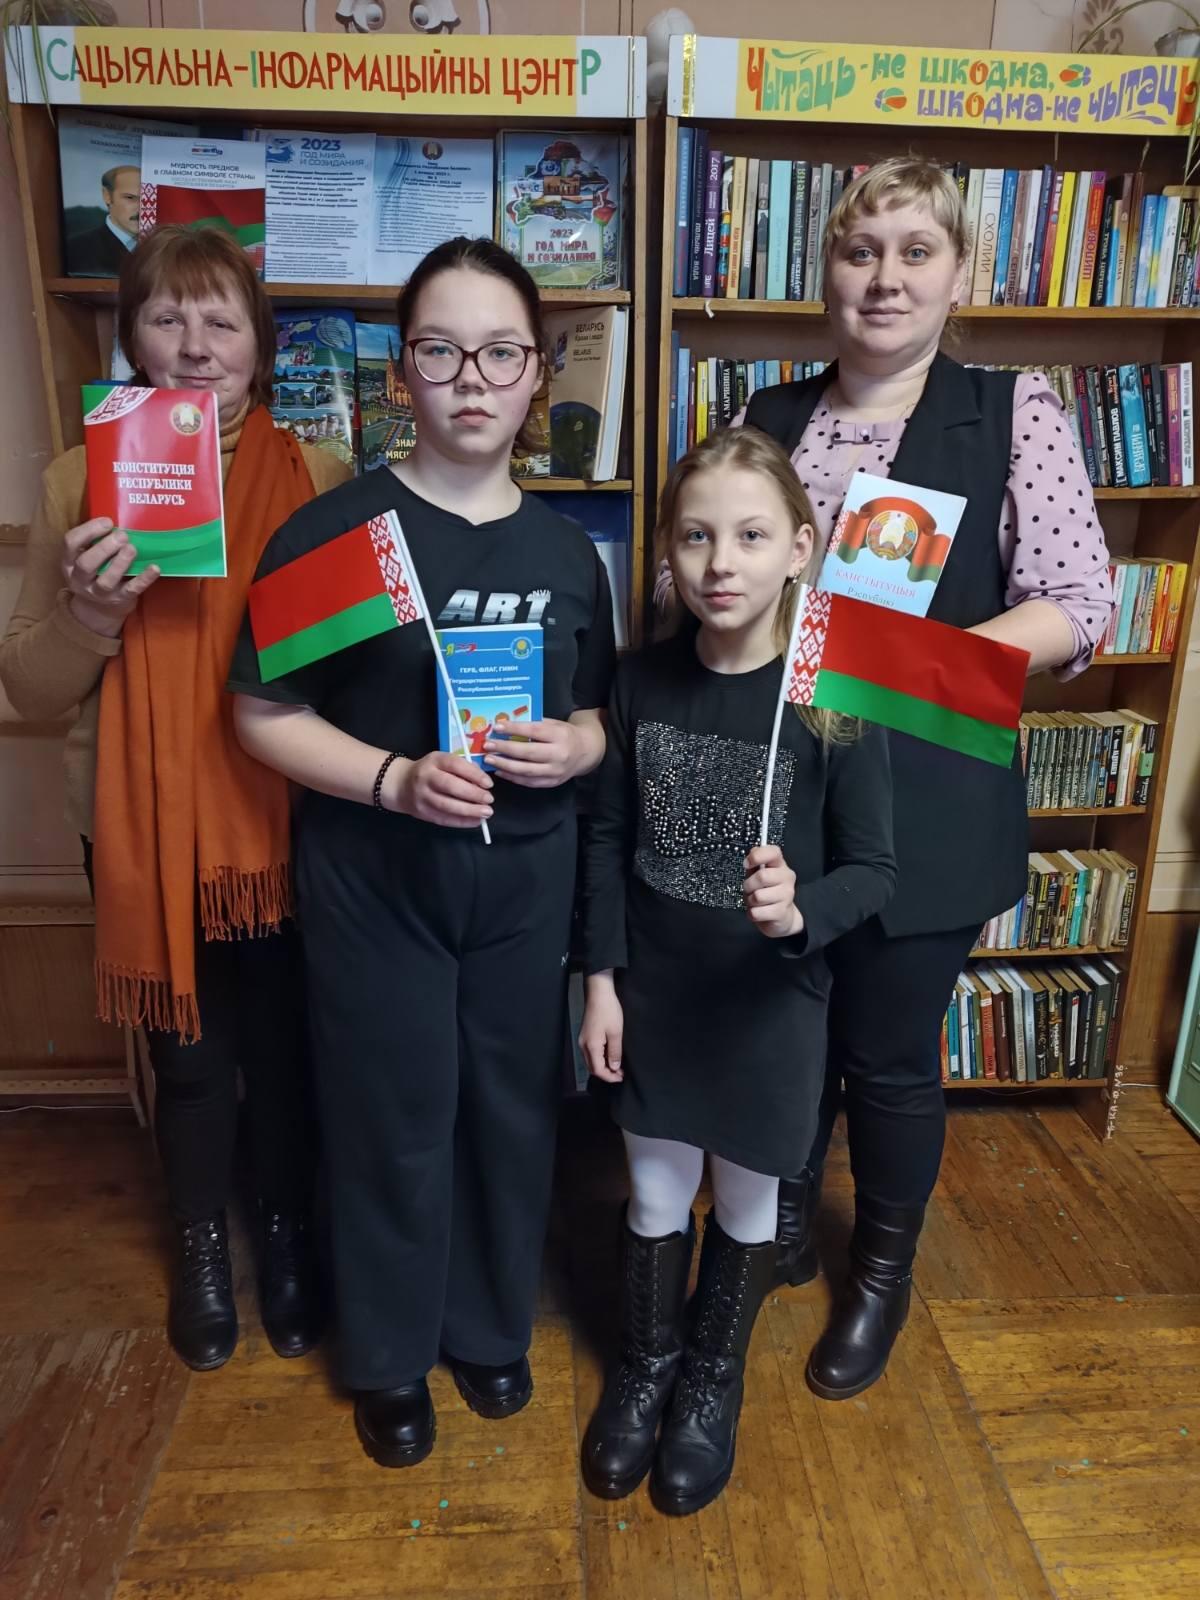 Участники мероприятия в Радюковскаой сельской библиотеке